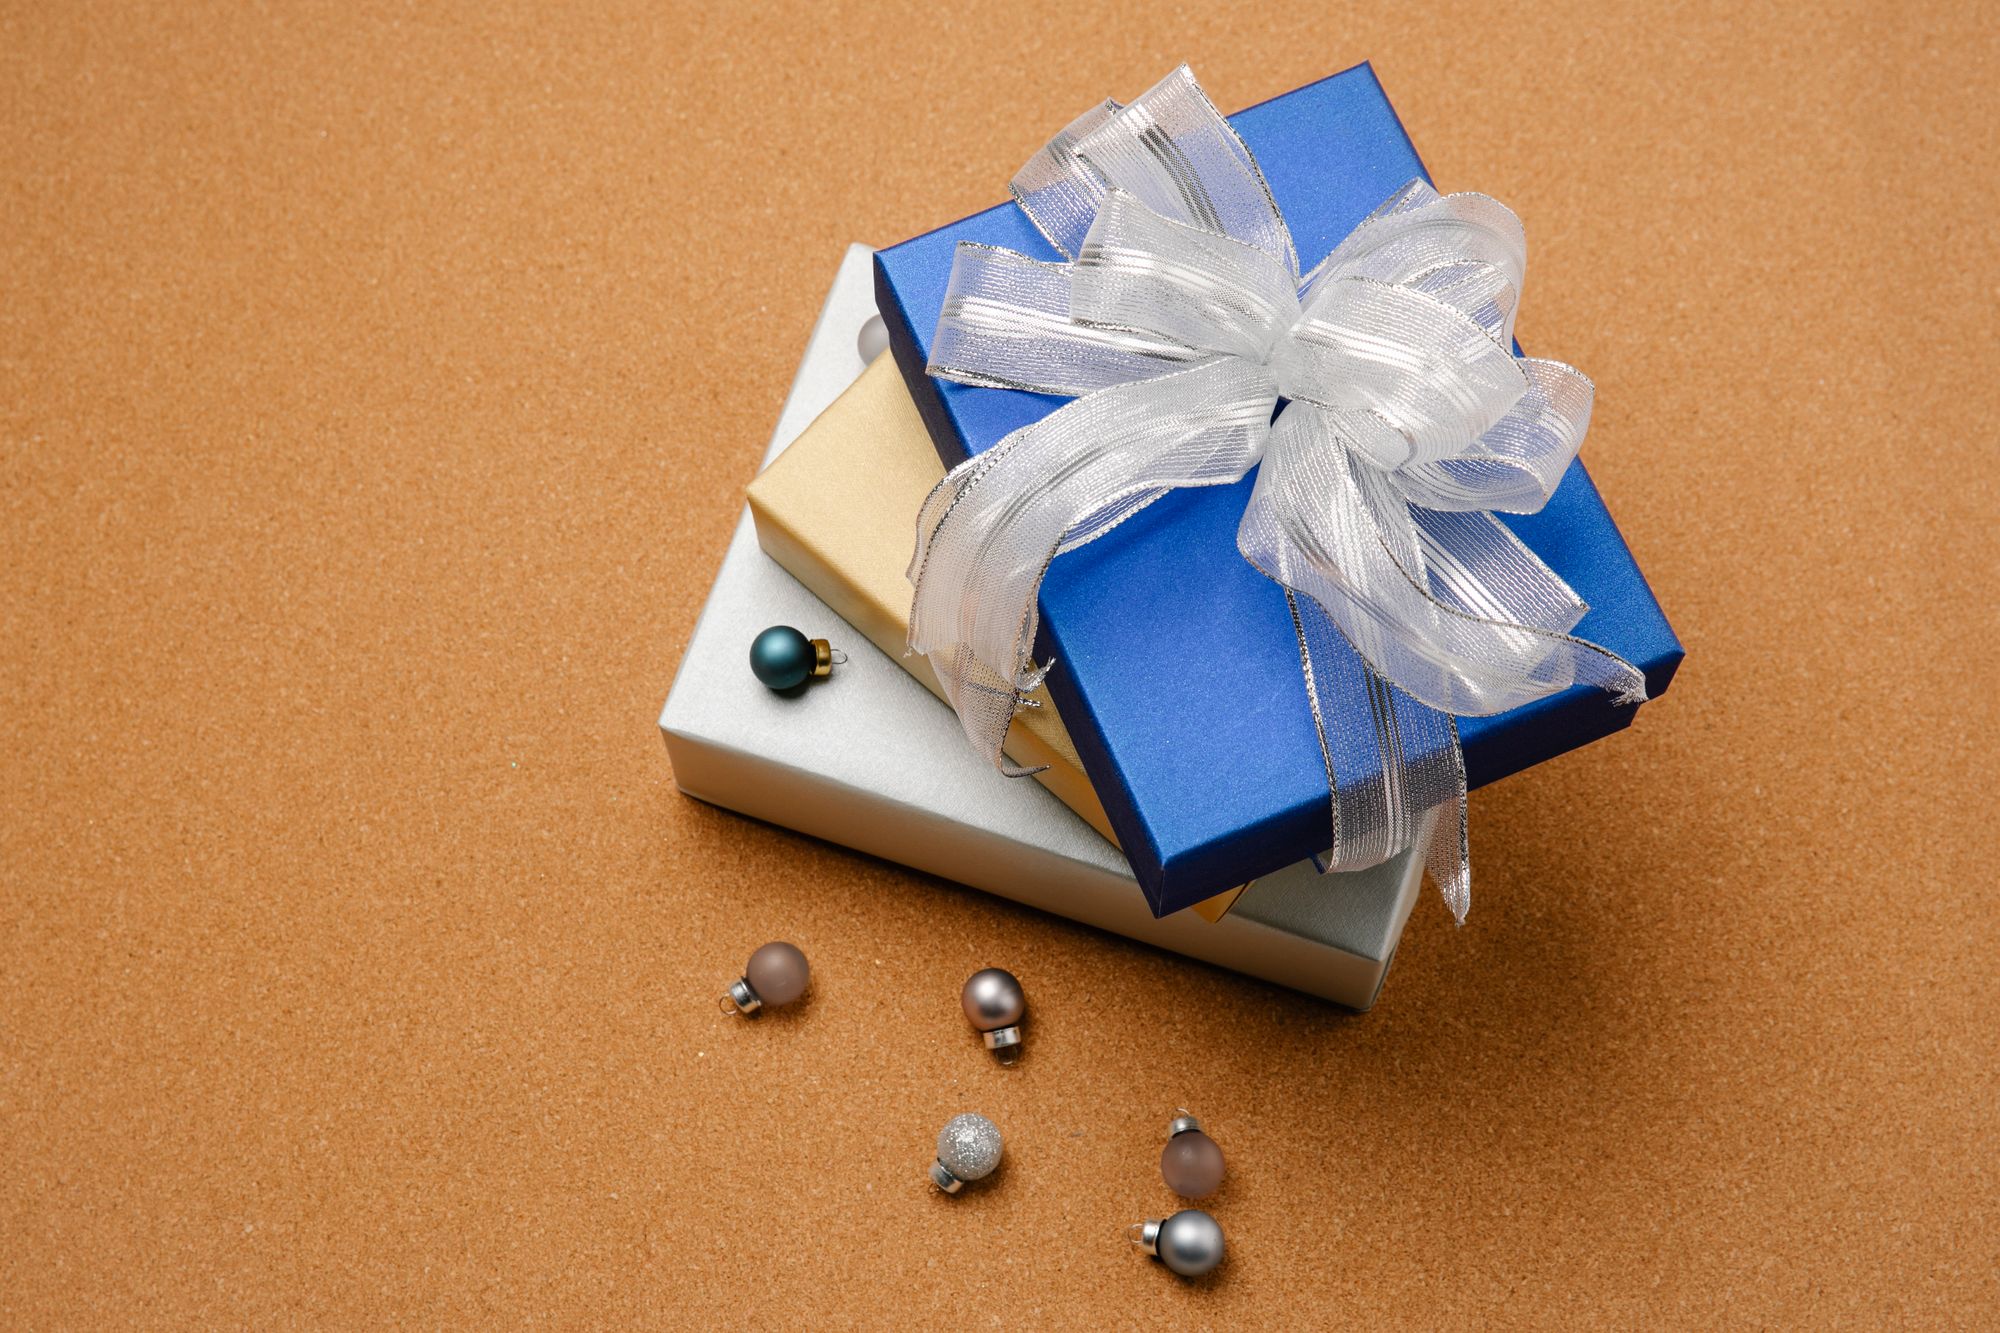 Czym uzupełnić prezent? – Kilka pomysłów